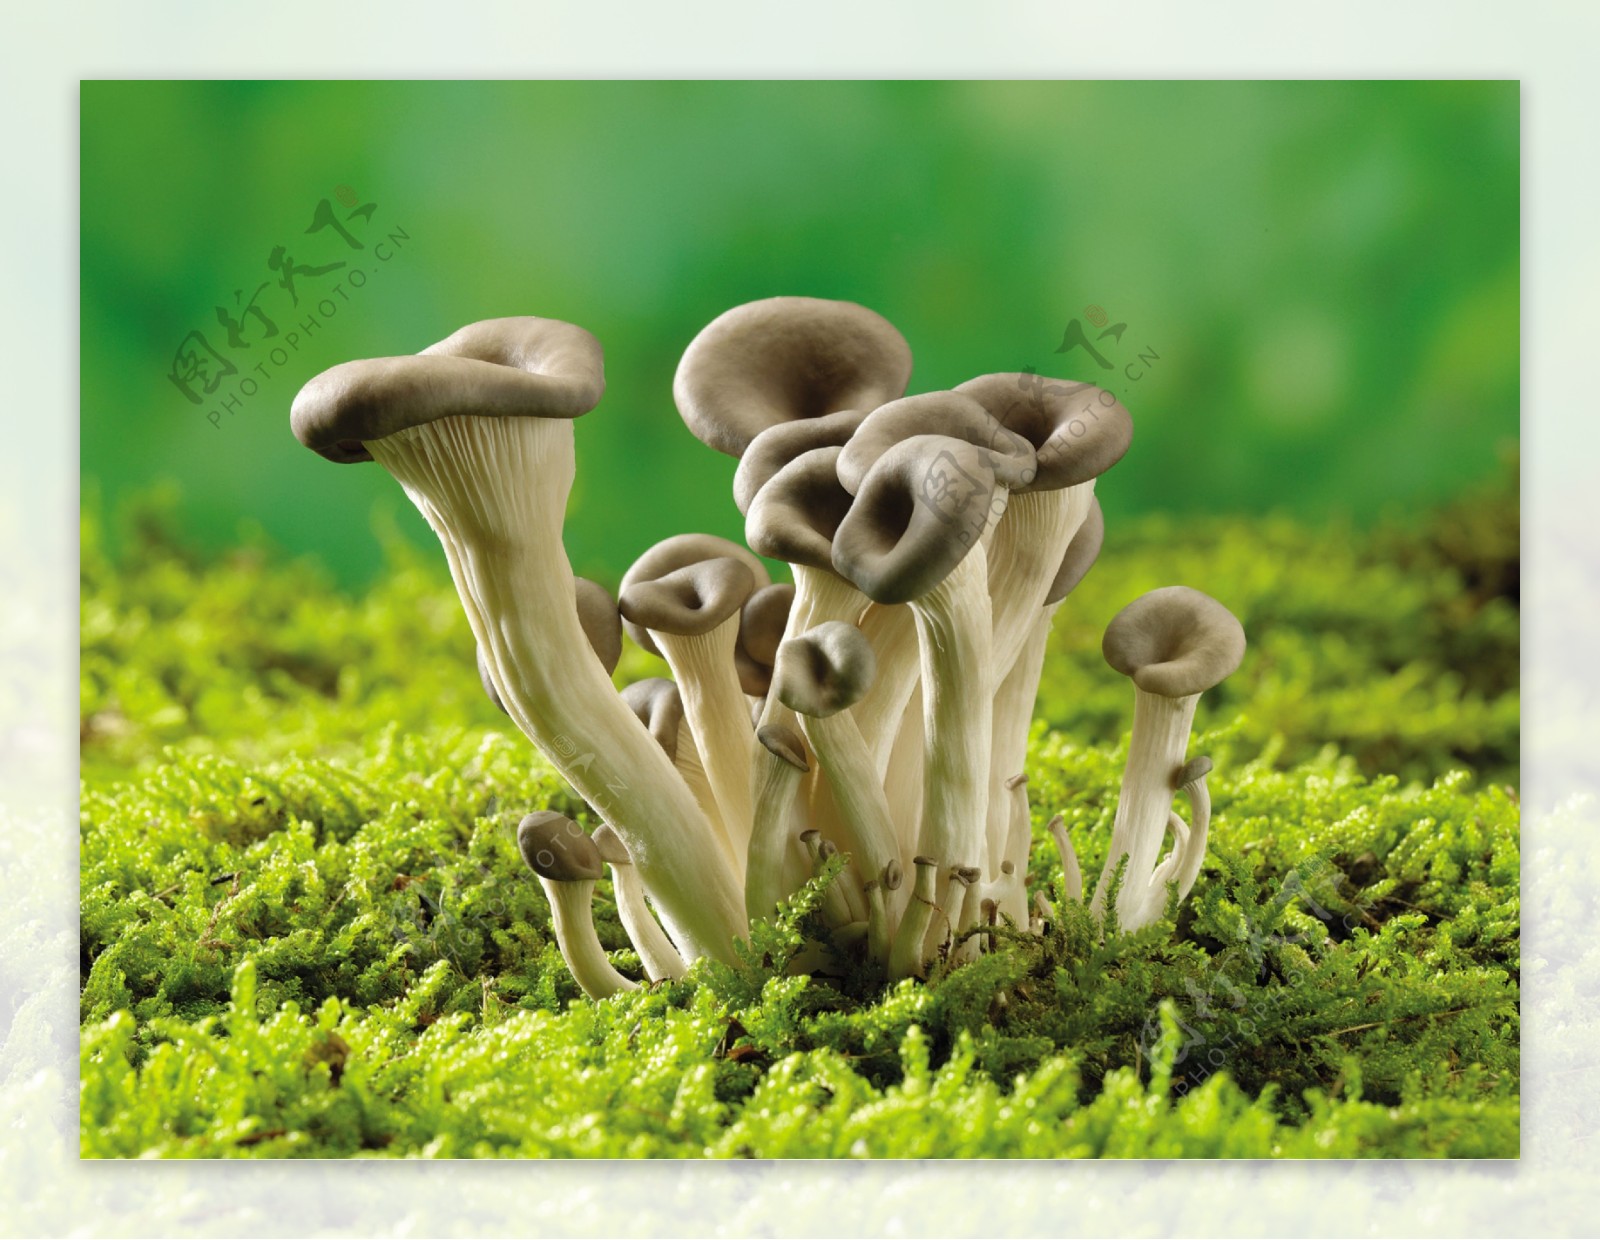 长在草地的一簇蘑菇